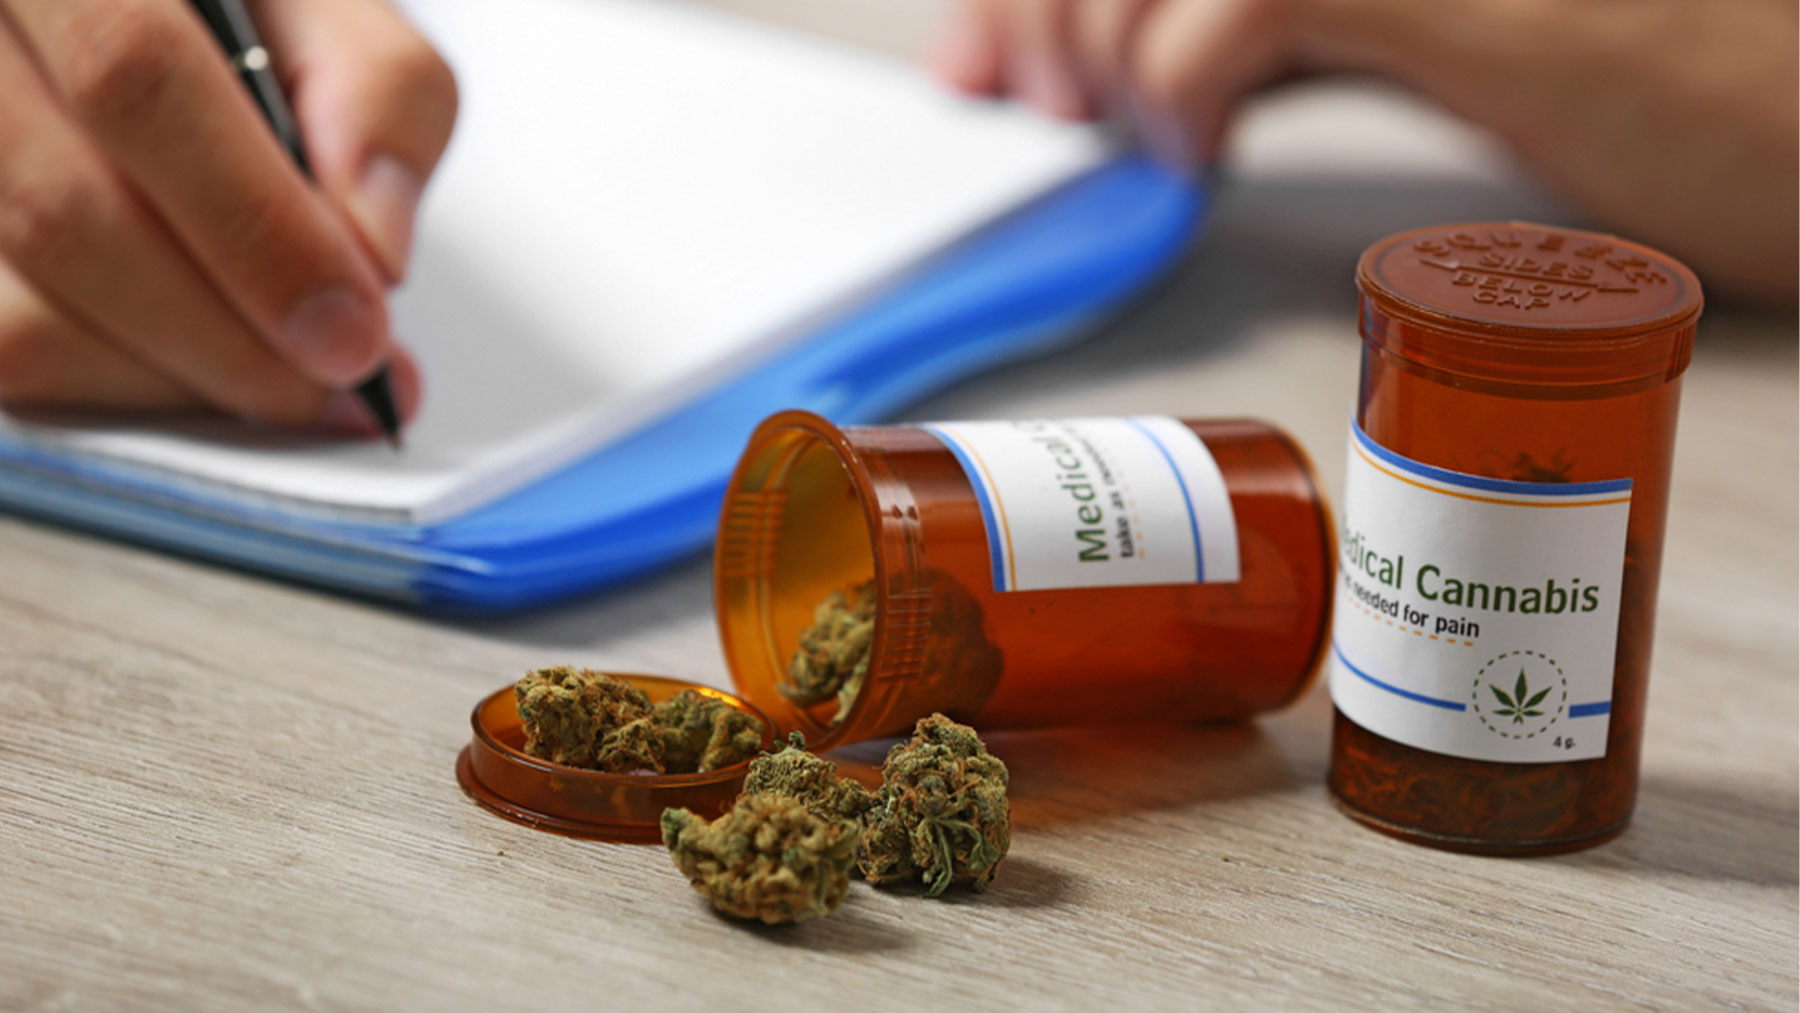 El cannabis medicinal se presenta en varias fórmulas según los niveles de tetrahidrocannabinol (THC) y cannabidiol (CBD).